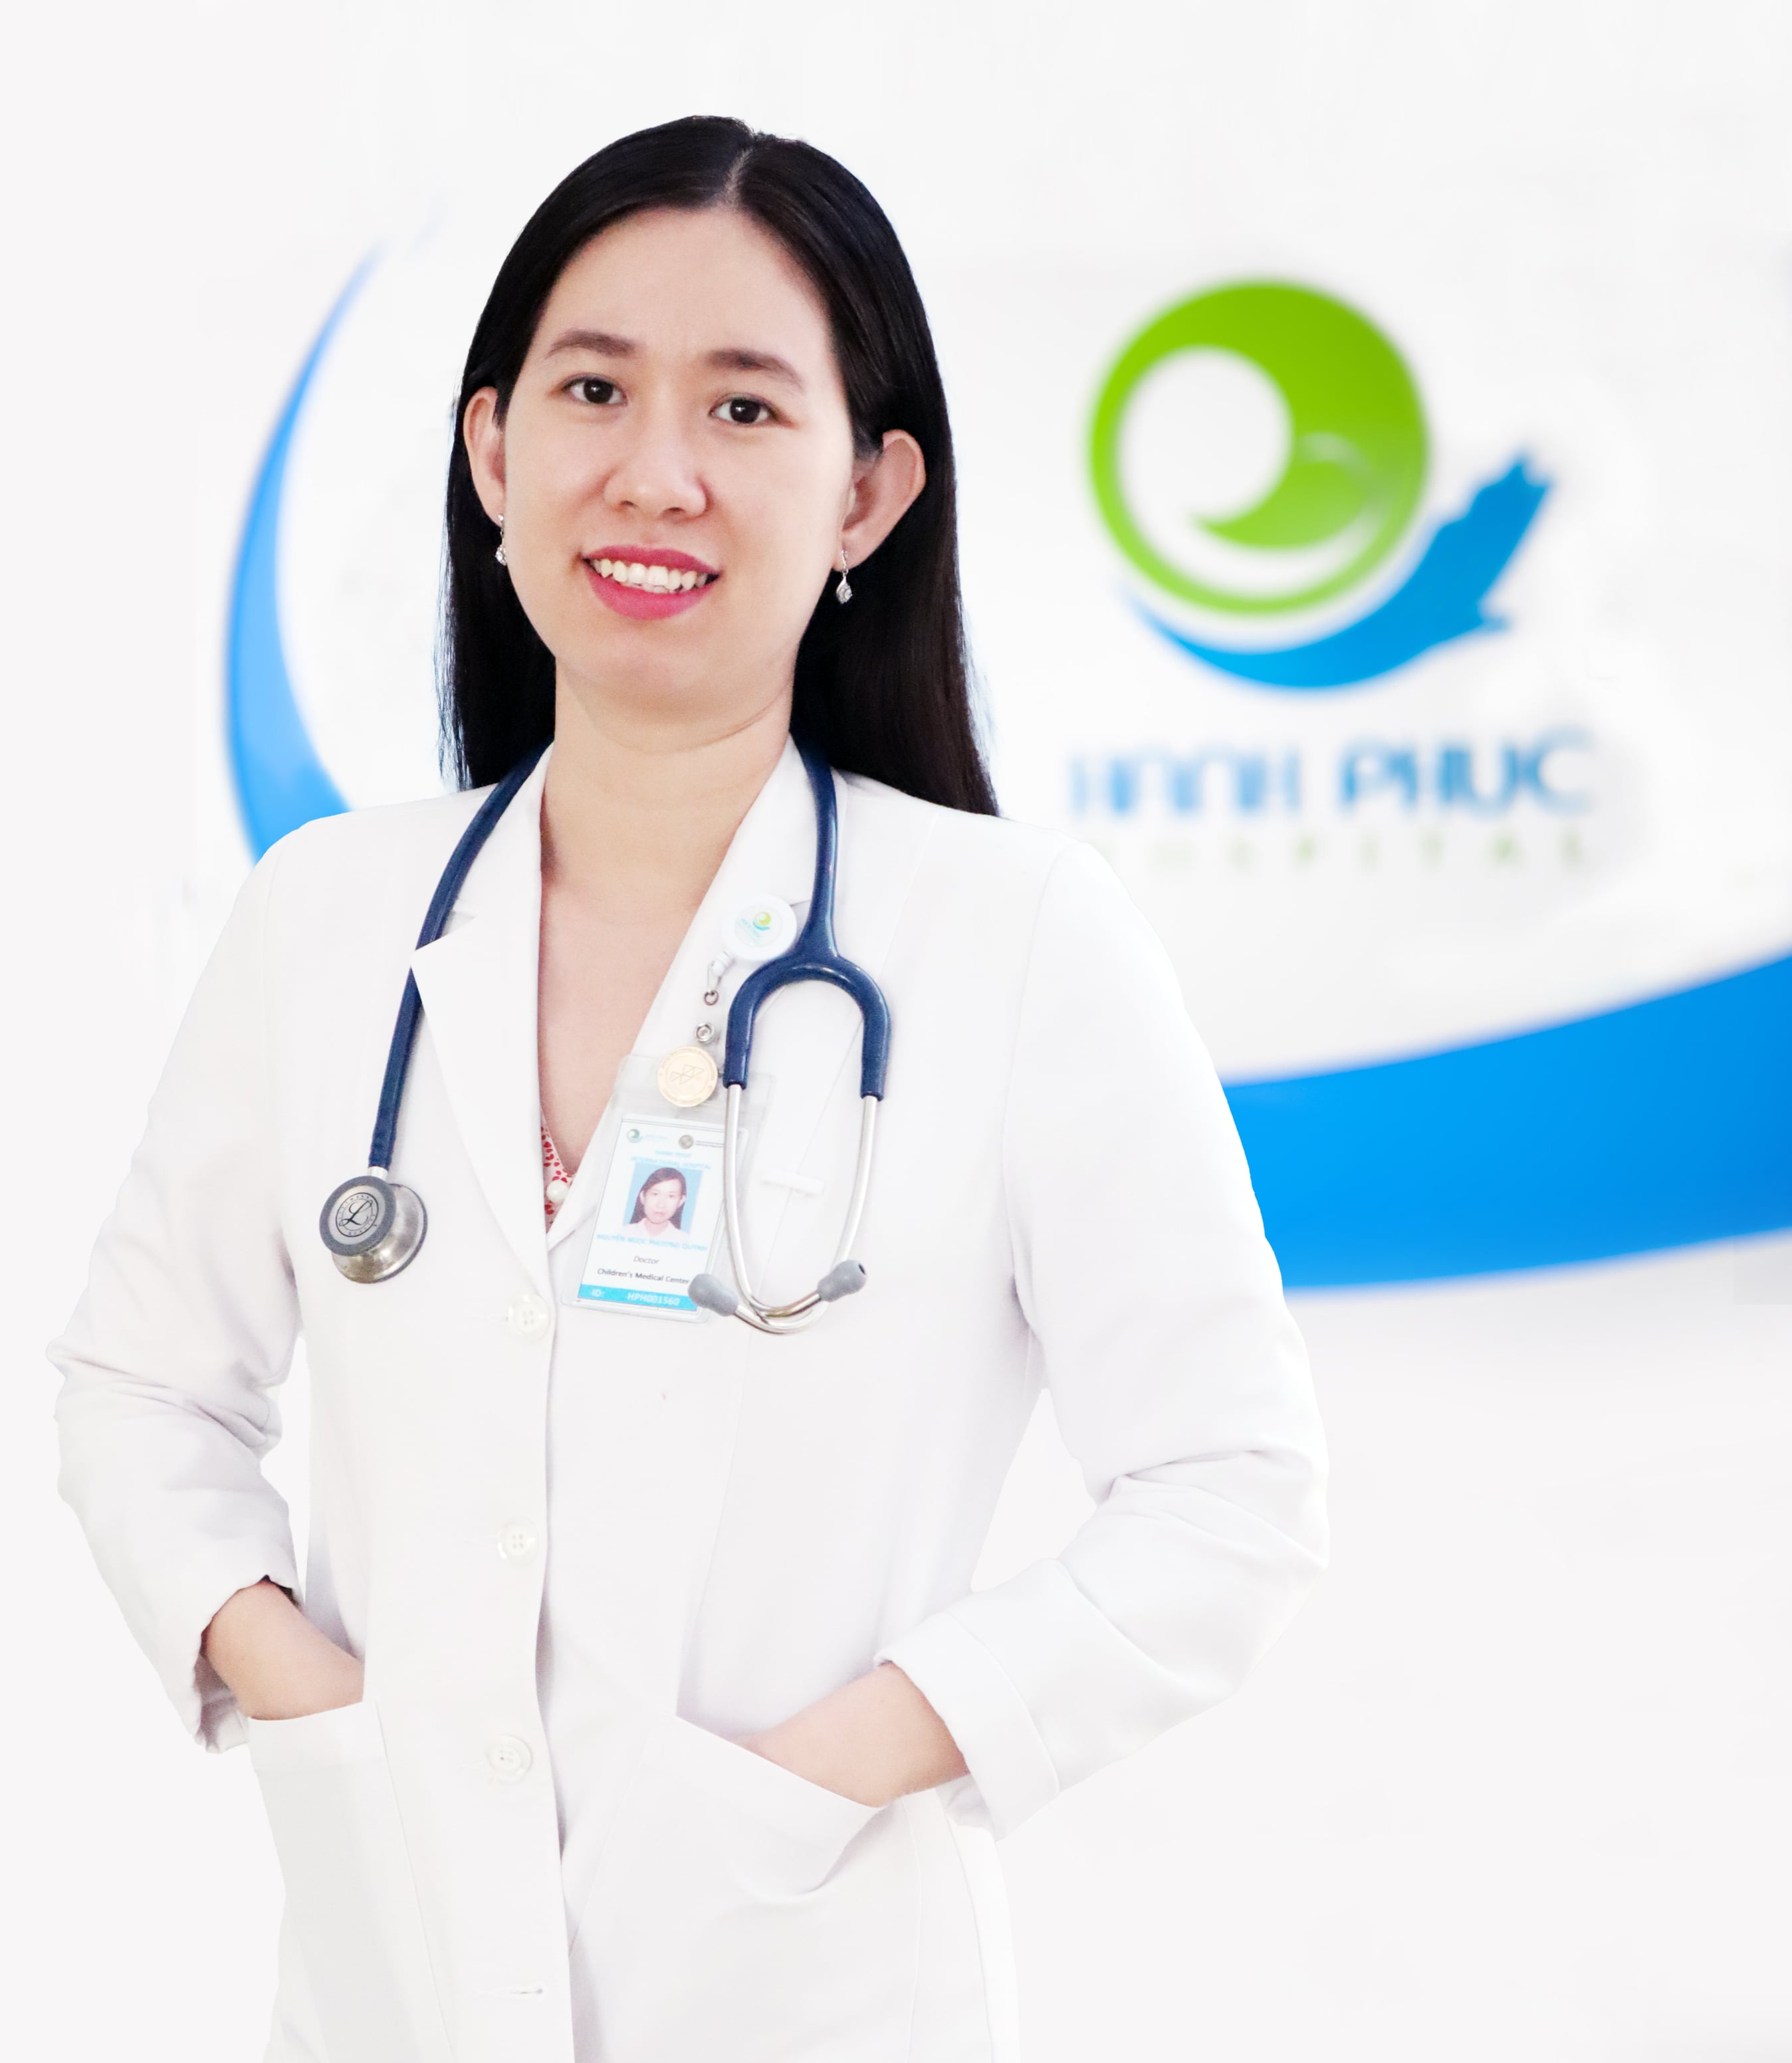 Bác sĩ Nguyễn Ngọc Phương Quỳnh - Bệnh viện Quốc tế Hạnh Phúc